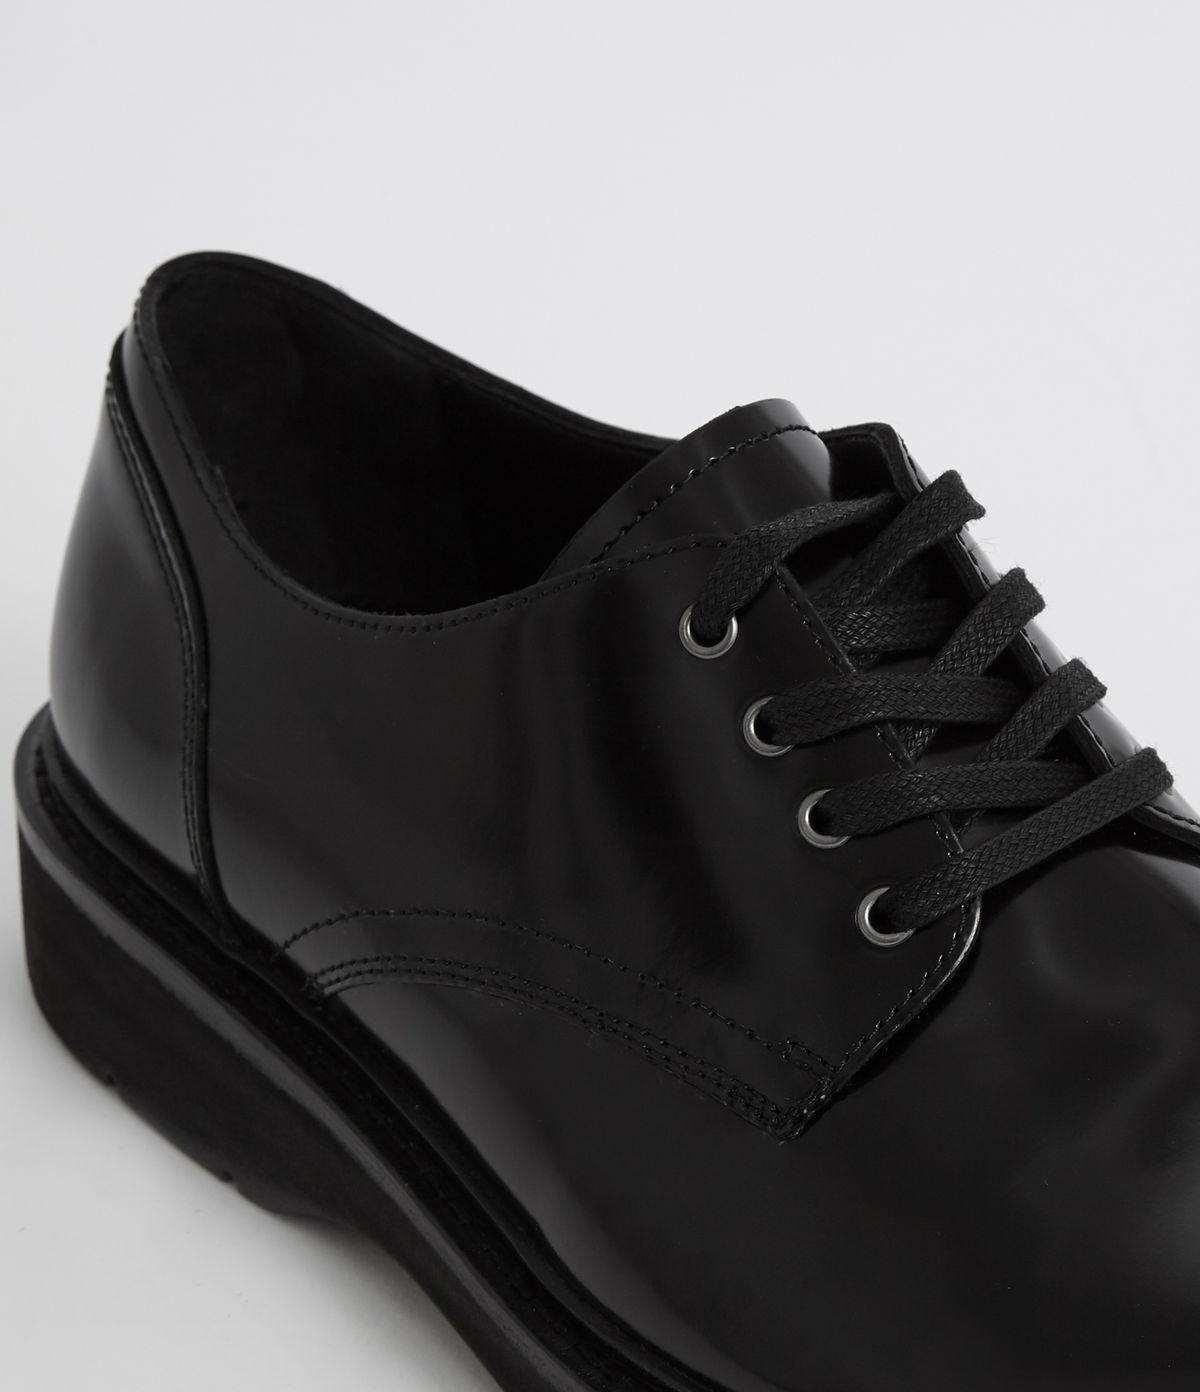 AllSaints Leather Mersey Shoe in Black 